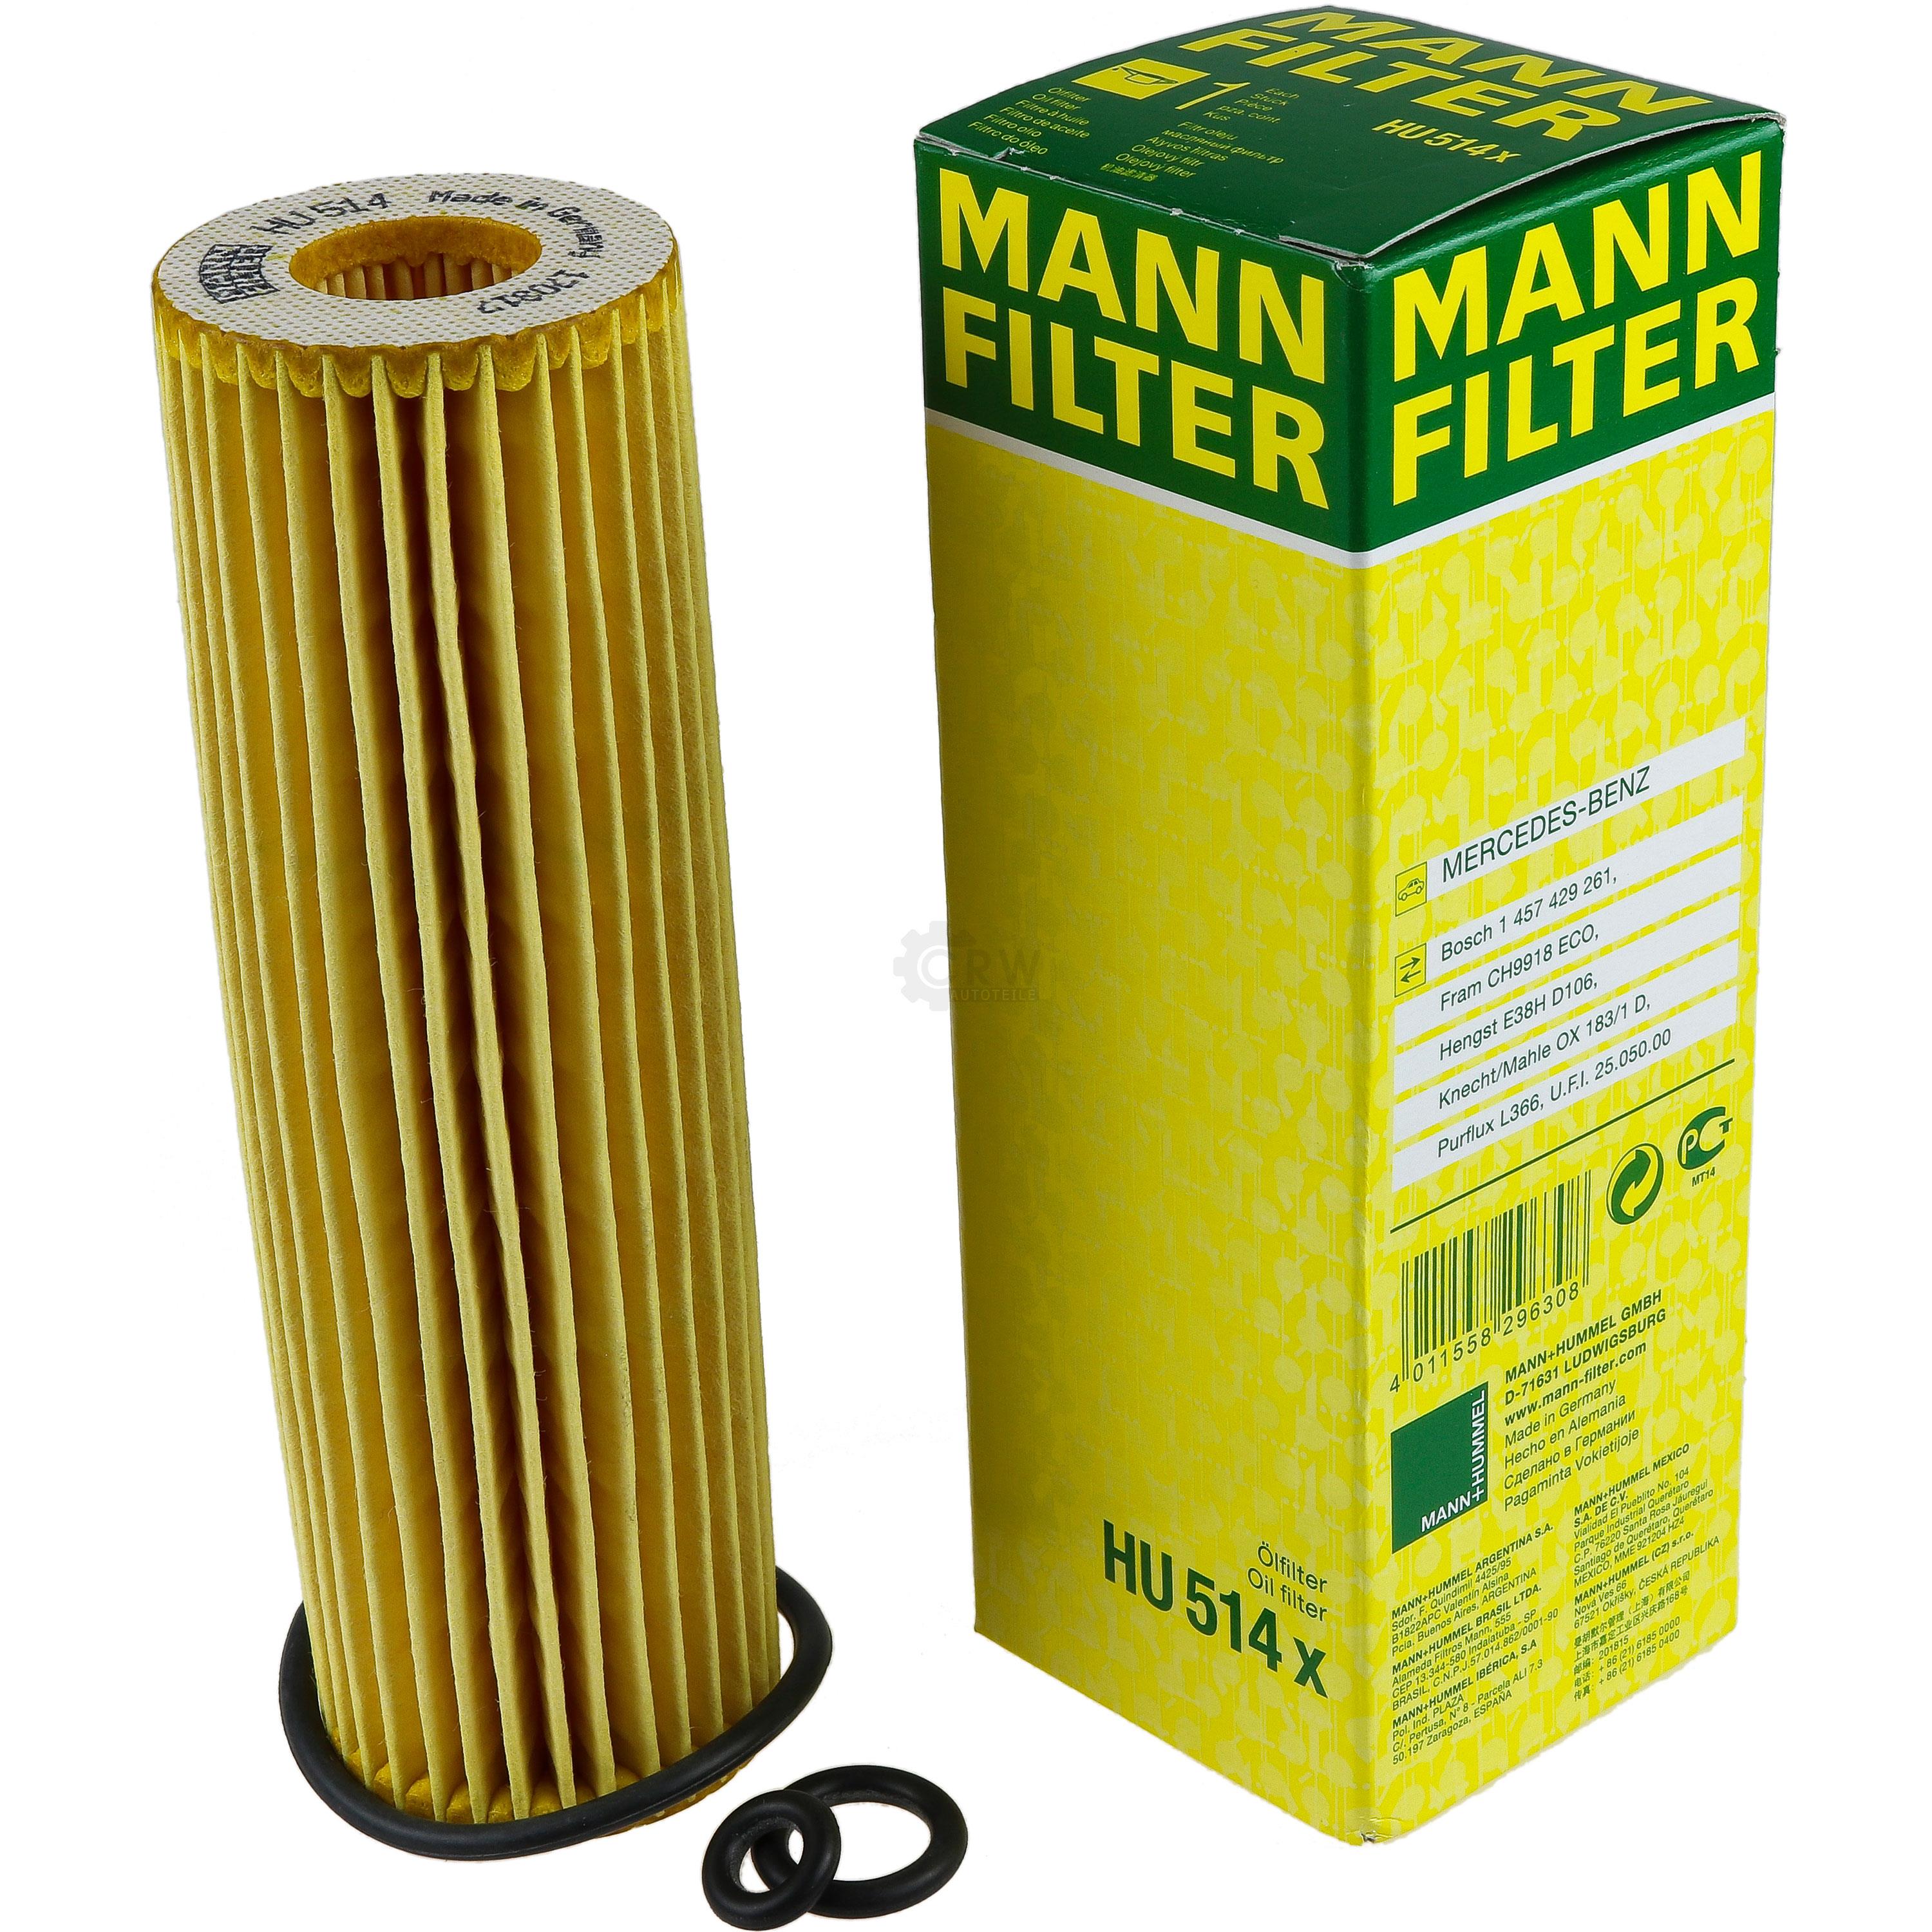 MANN-FILTER Ölfilter HU 514 x Oil Filter